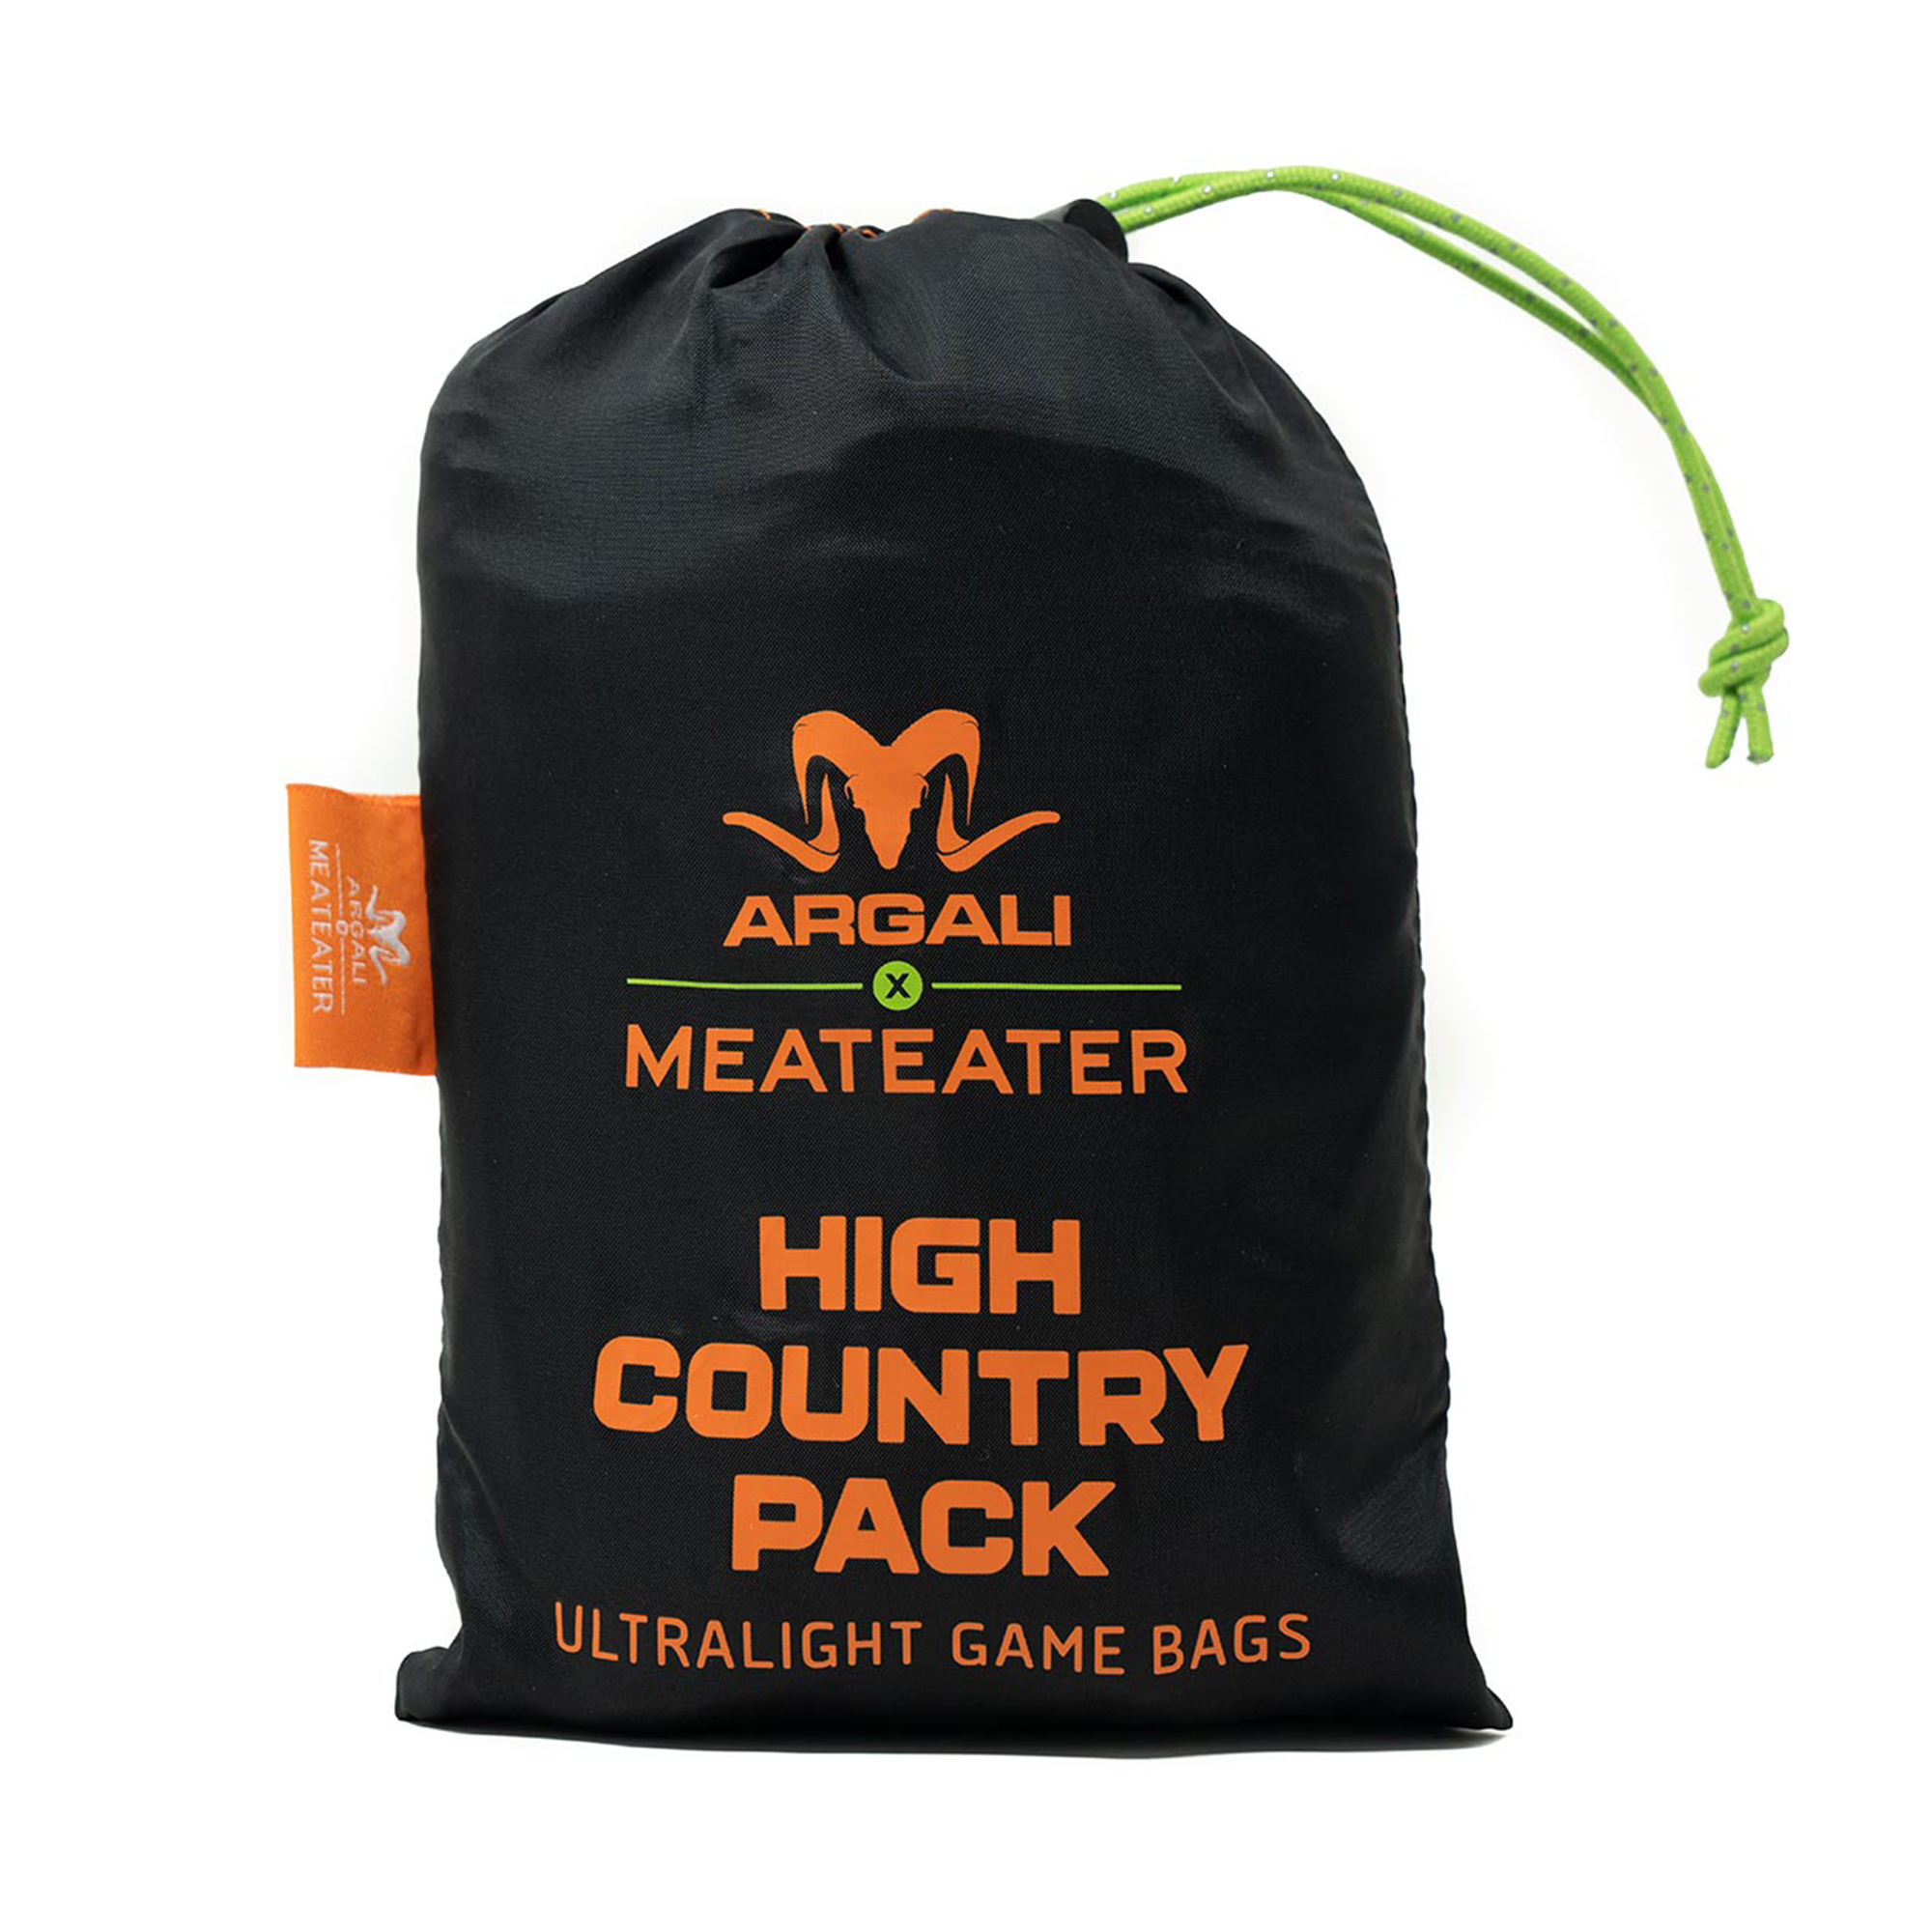 Shop for Argali High Country Pack Ultralight Game Bag Set